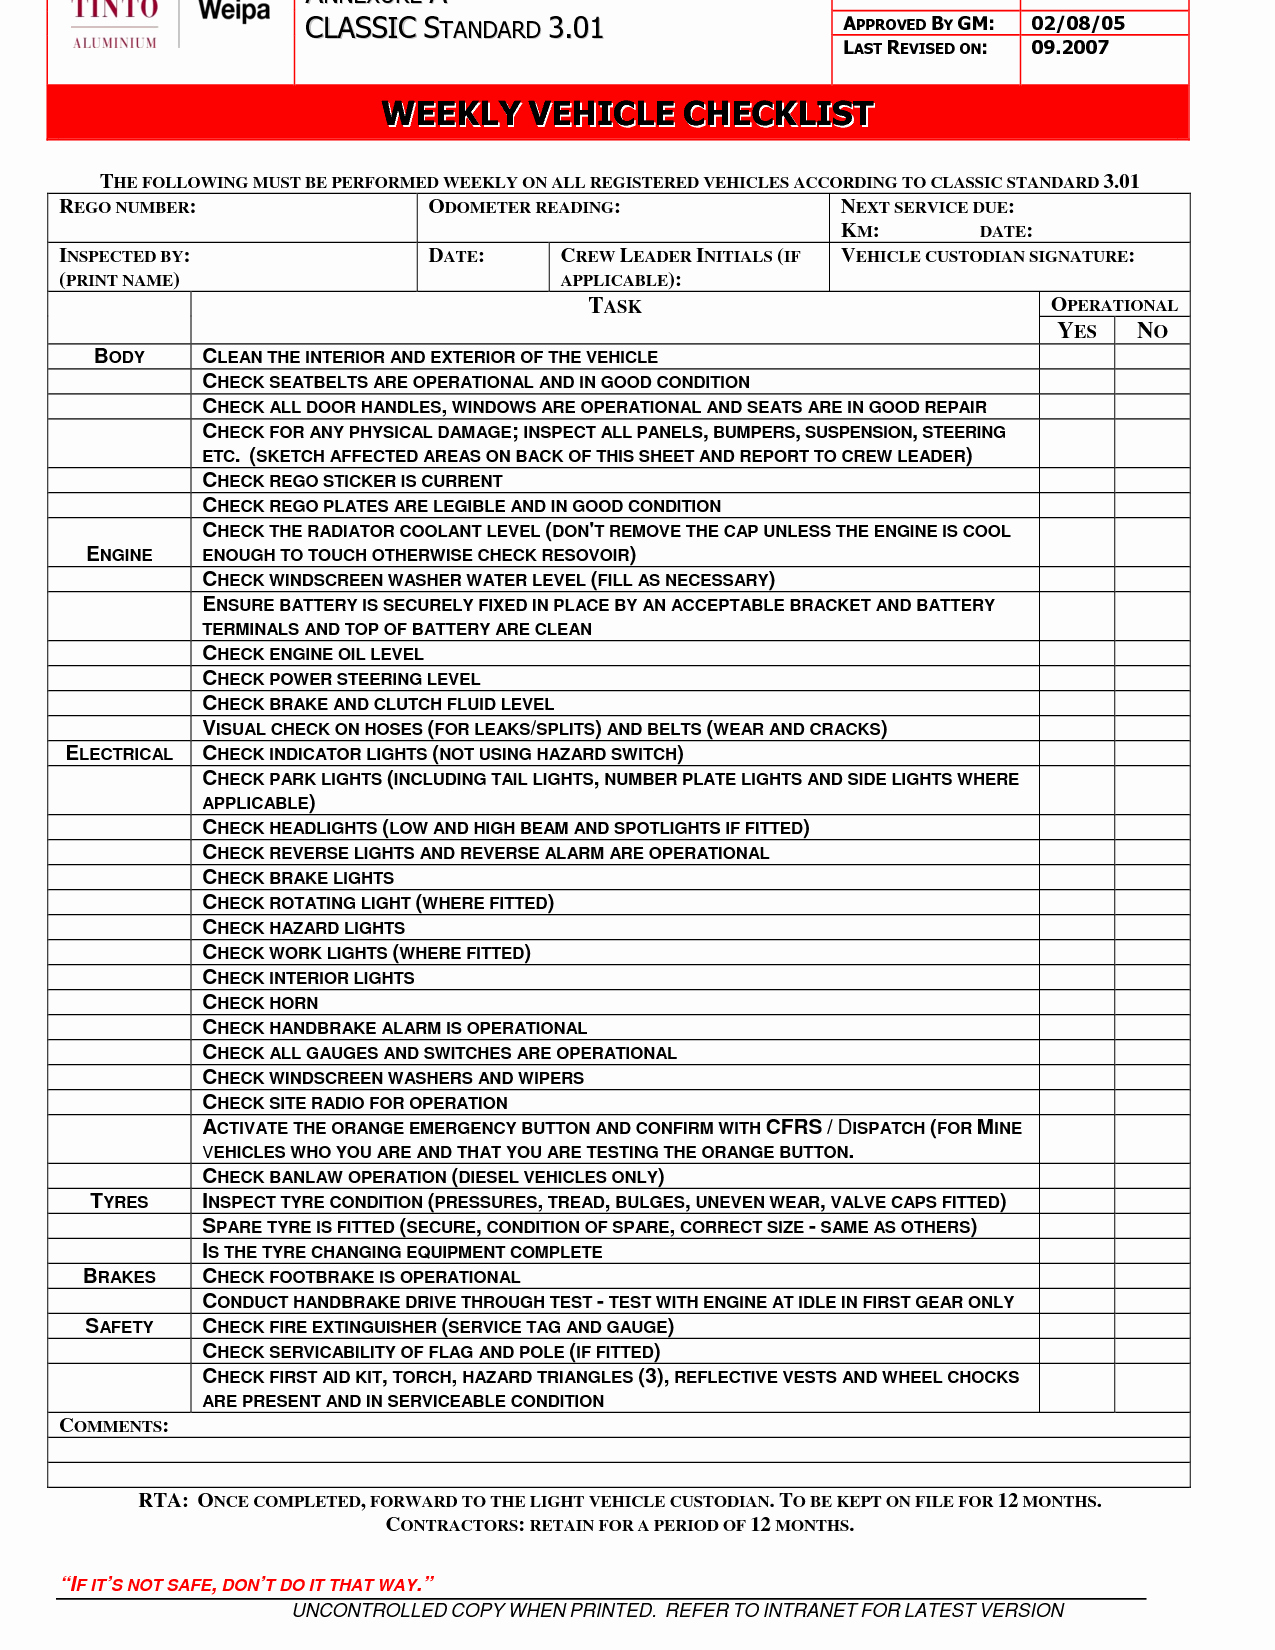 Vehicle Maintenance Checklist Template Unique Car Maintenance Checklist